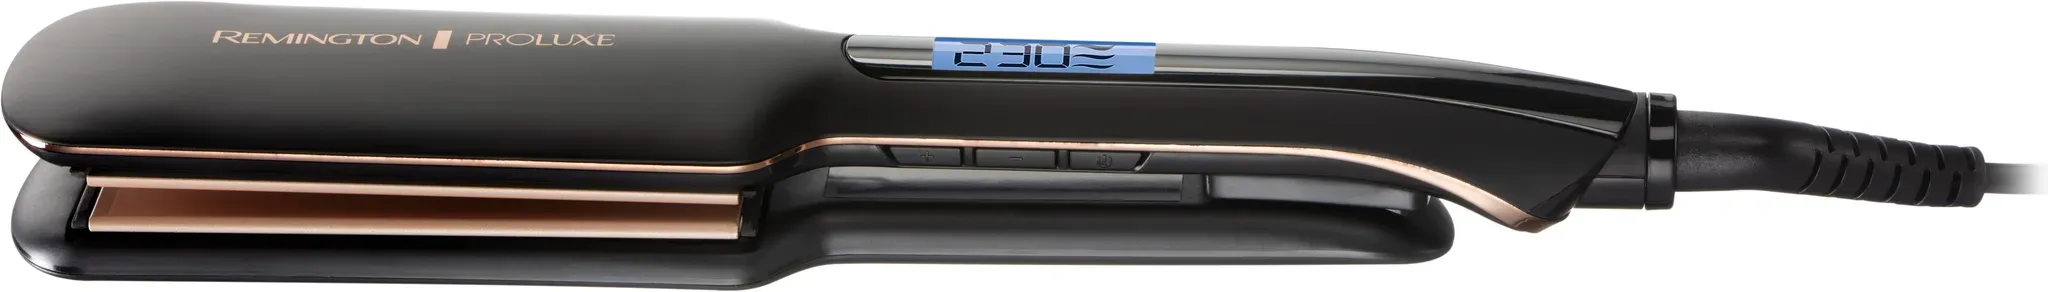 Glätteisen REMINGTON "S9150B" schwarz Haarglätter 2x breitere federnd gelagerte Stylingplatten, OPTIheat-Technologie